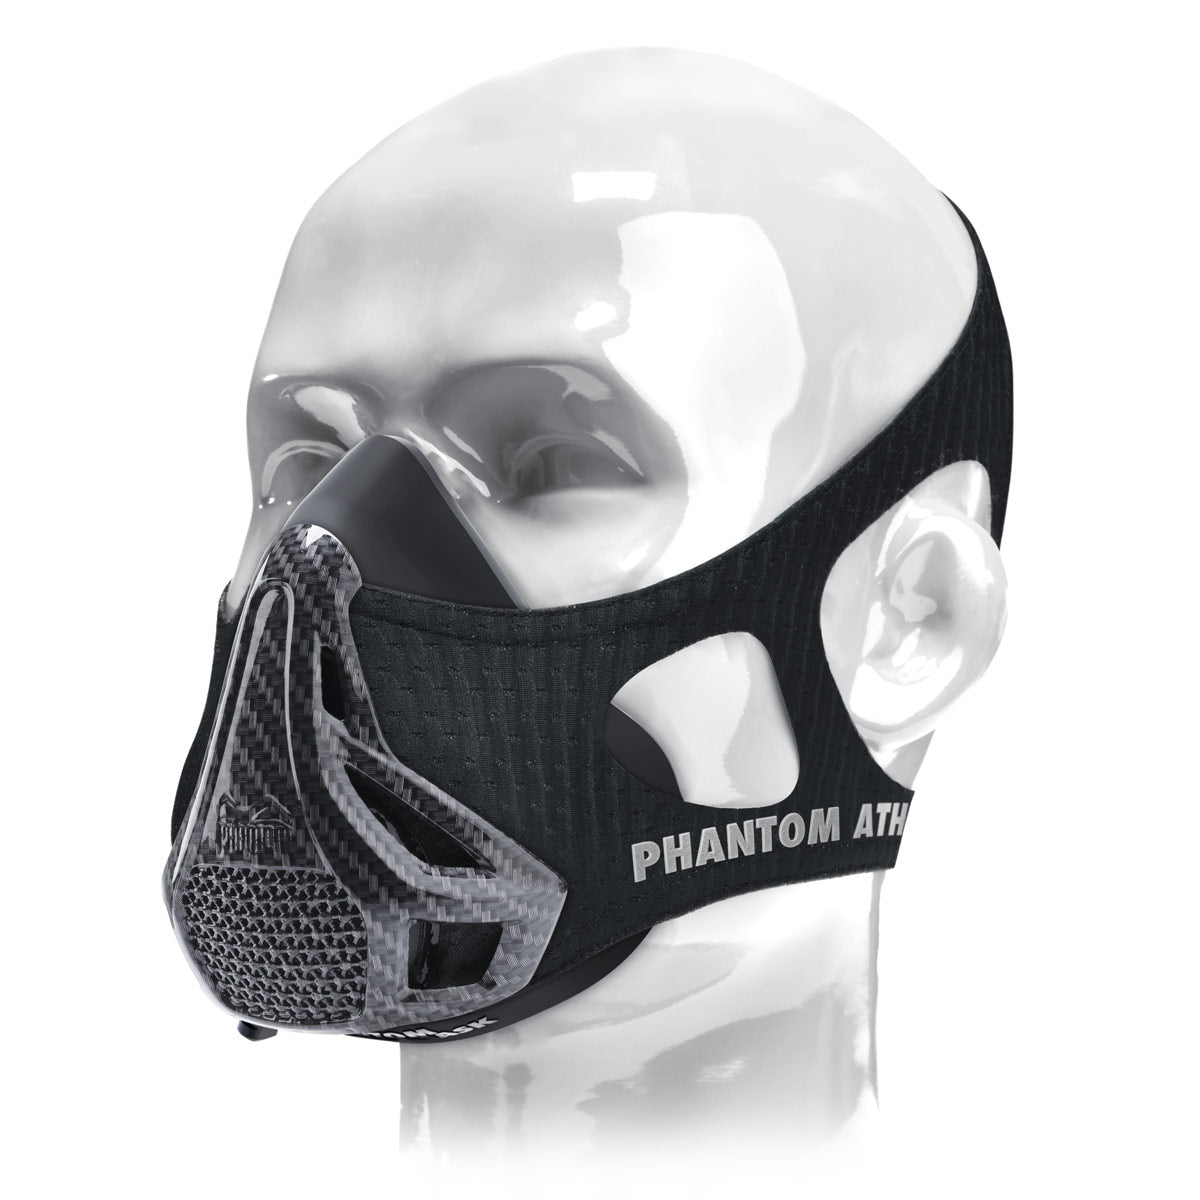 A máscara de treinamento Phantom . O original. Patenteado e premiado para levar seu condicionamento físico ao próximo nível. Agora na edição limitada Carbon.